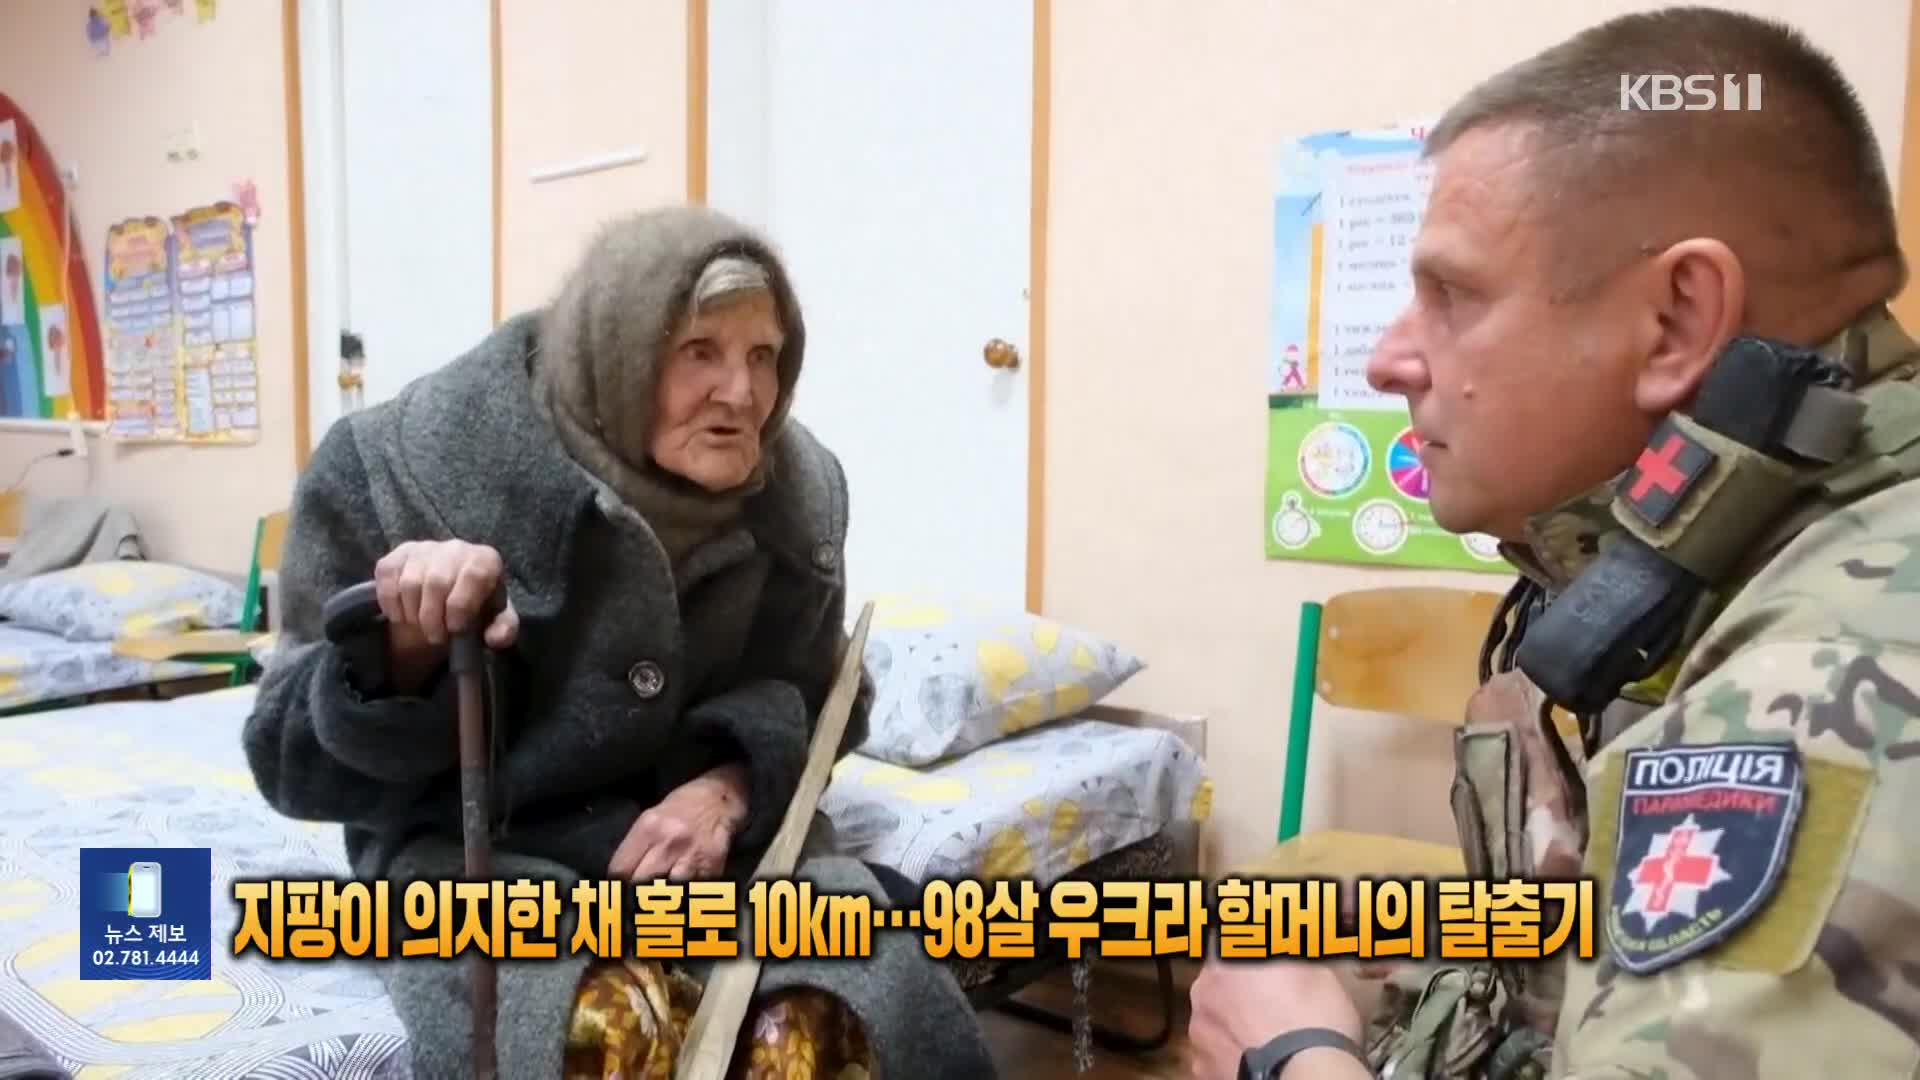 [잇슈 SNS] 지팡이 의지한 채 홀로 10㎞…98살 우크라 할머니의 탈출기